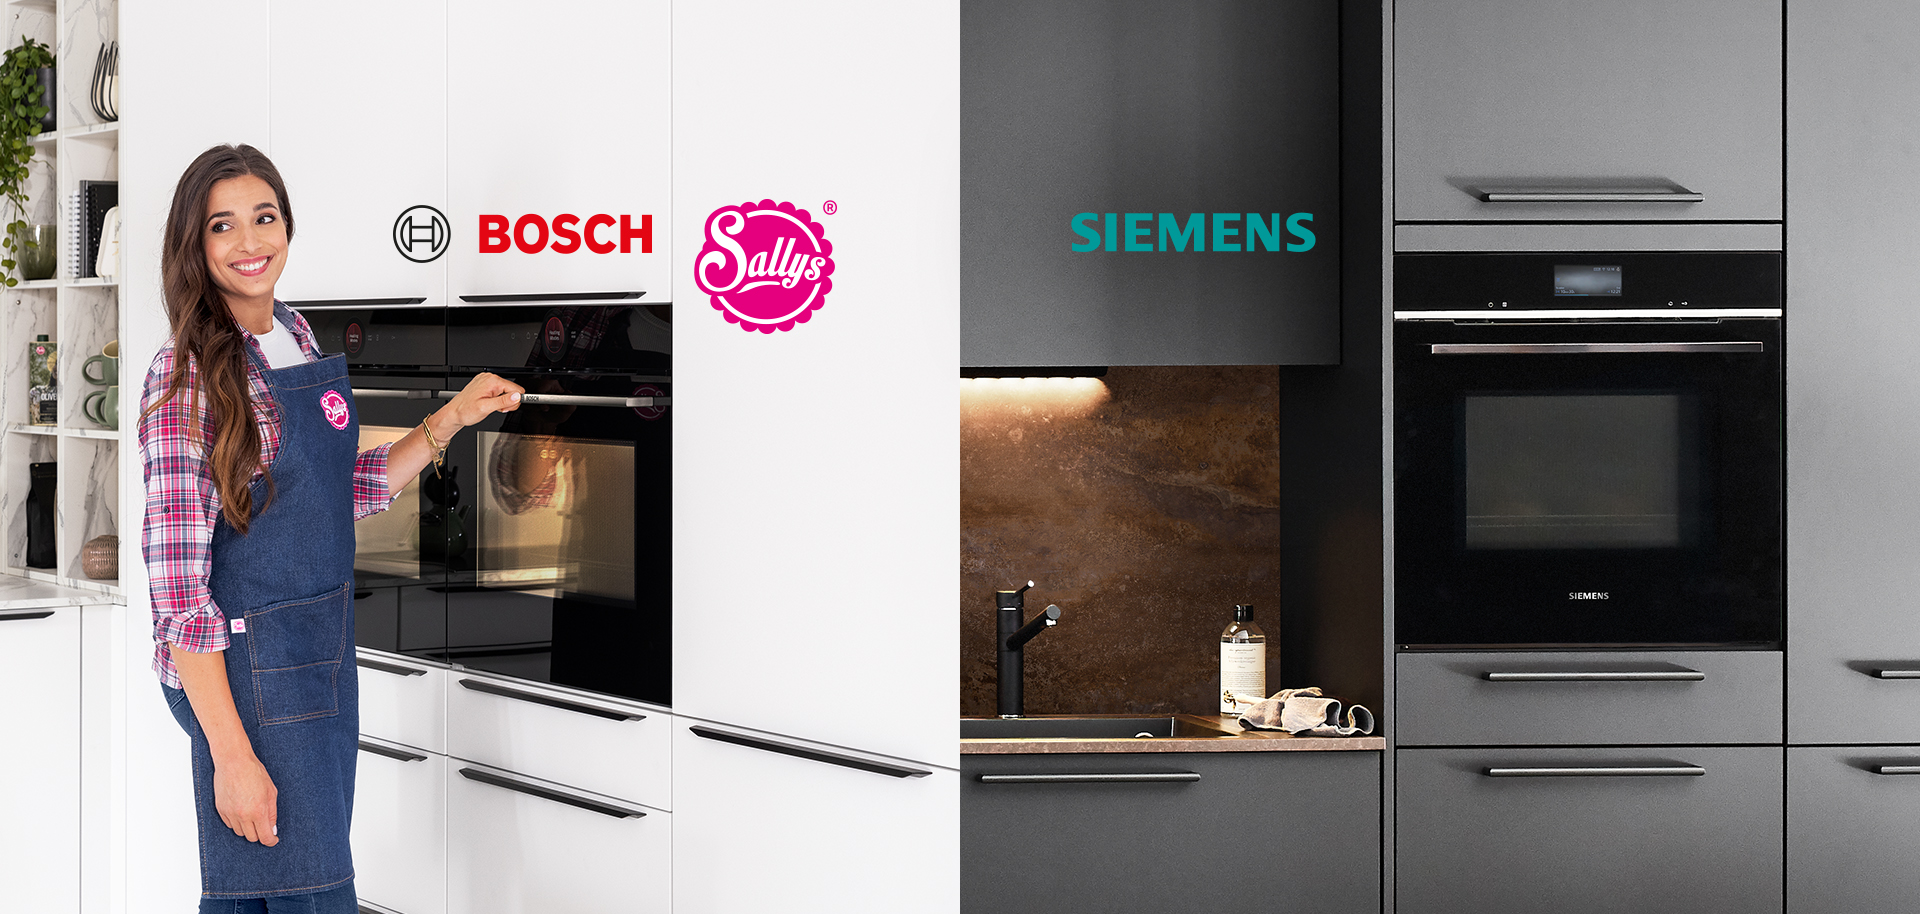 Een glimlachende persoon met een schort presenteert een Bosch oven, terwijl aan de andere kant een moderne Siemens keuken met strakke apparaten wordt getoond.